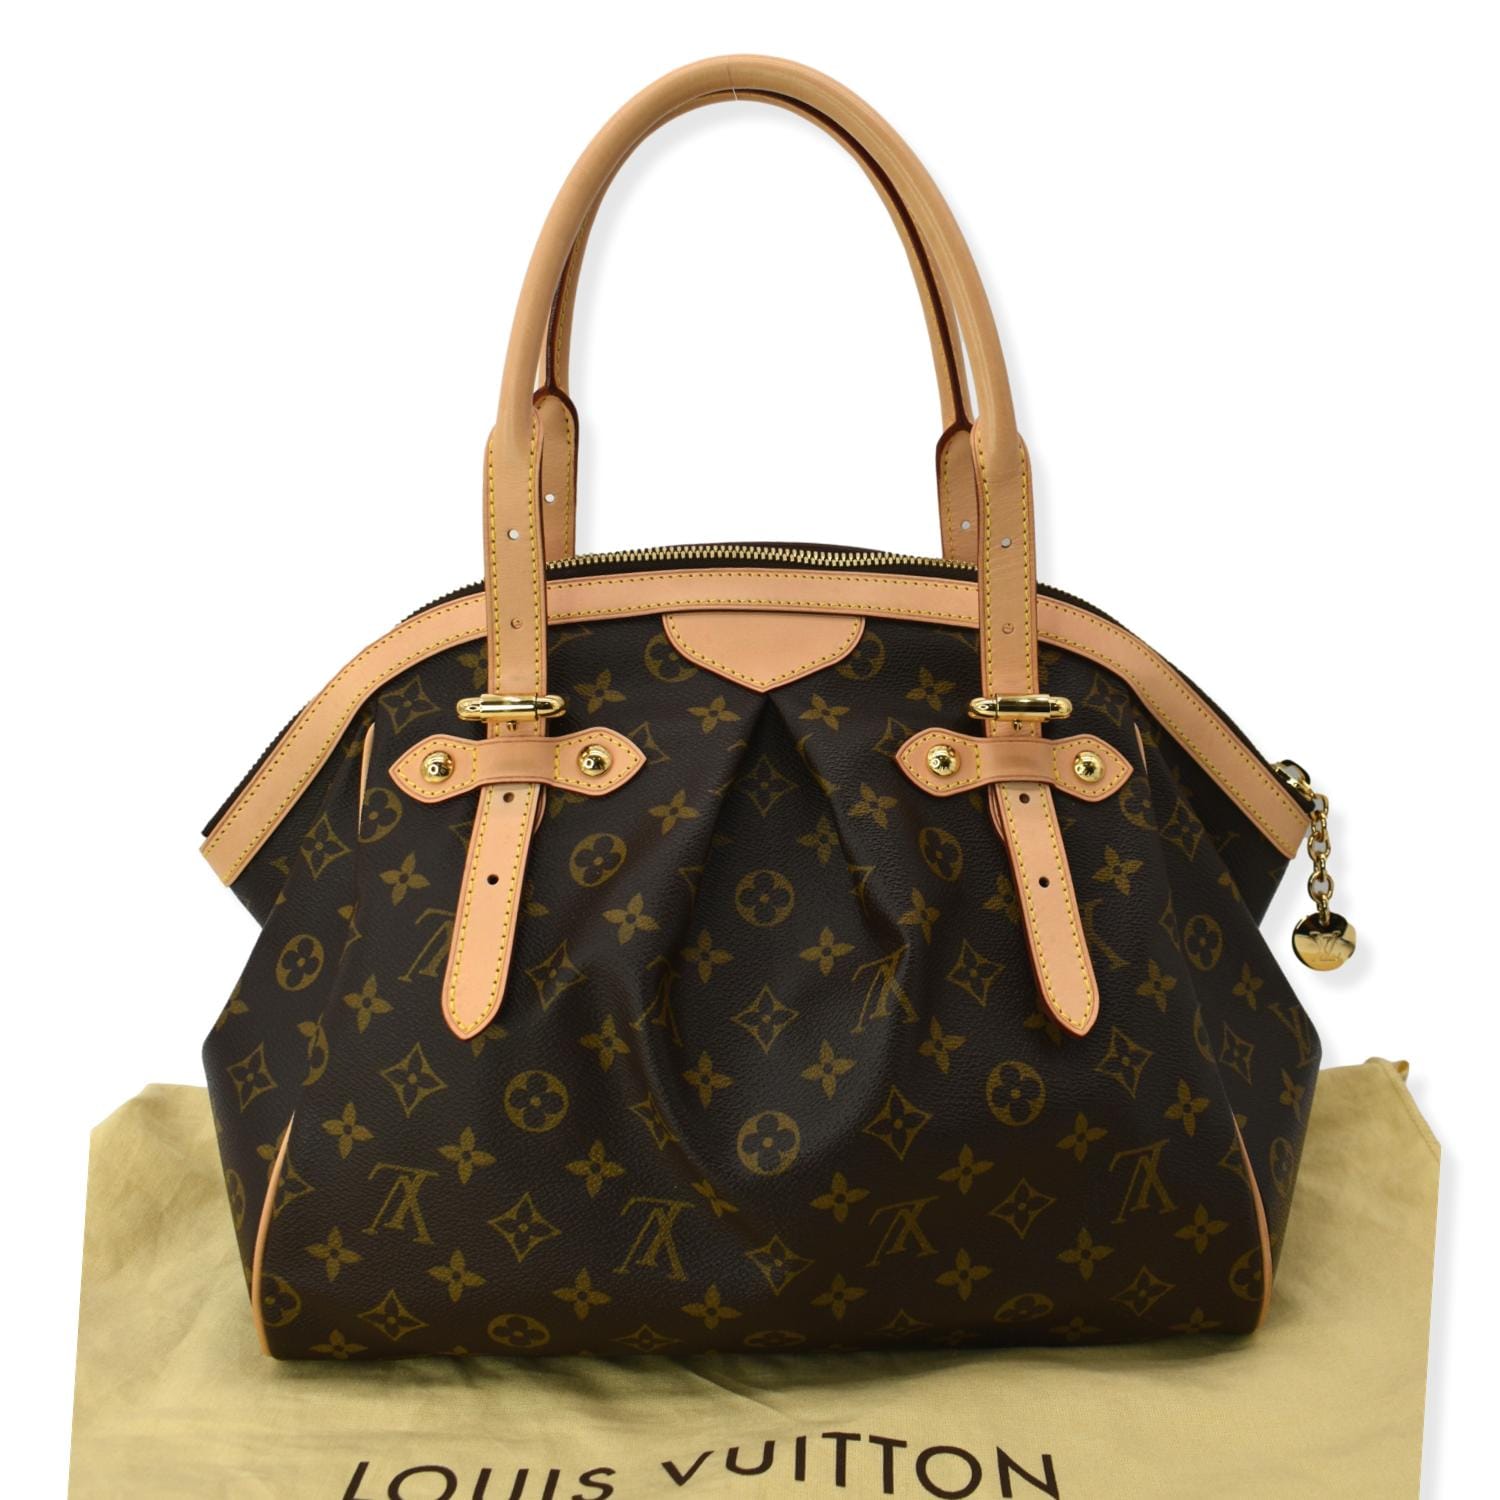 Louis Vuitton - Tivoli GM Shoulder bag - Catawiki